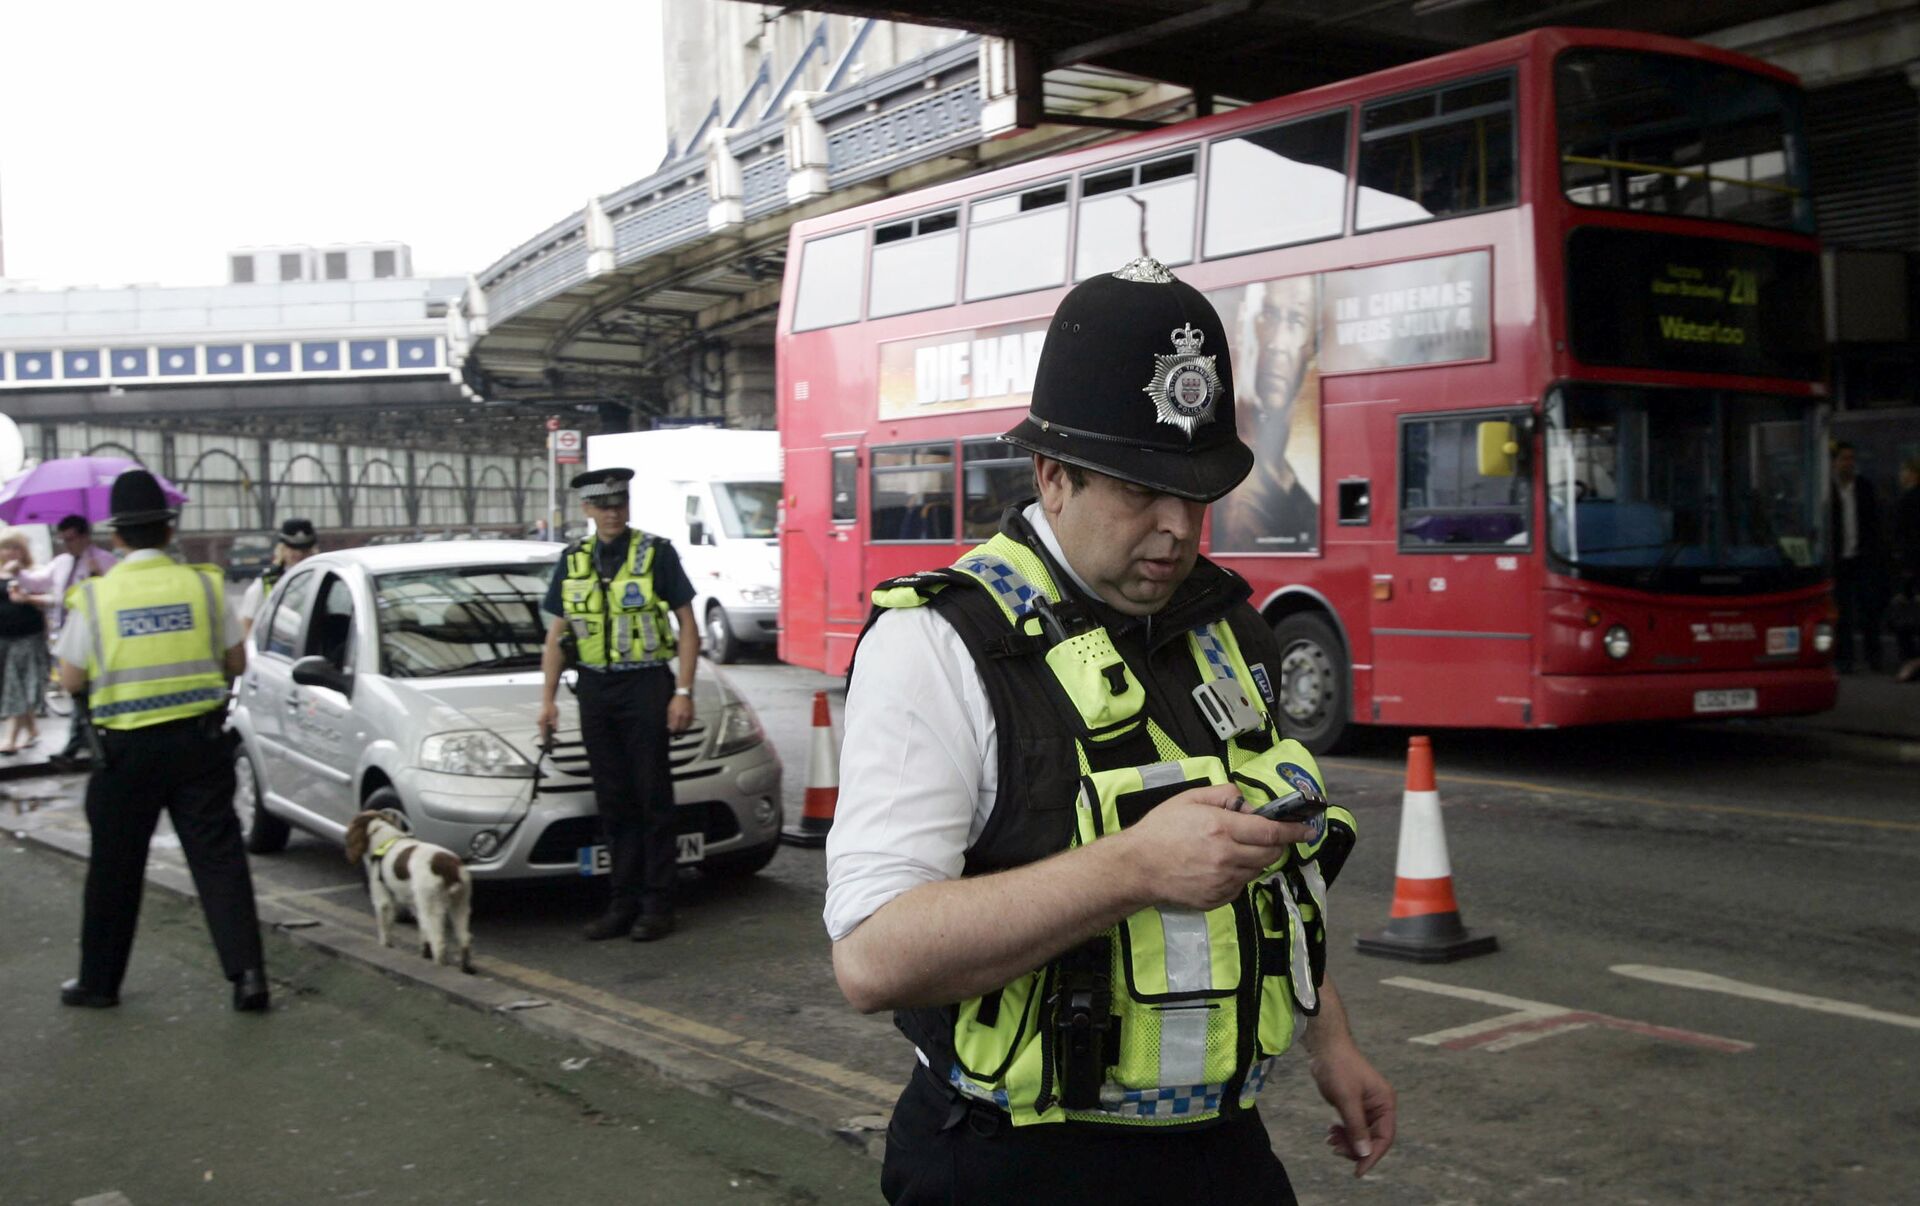 Арест в аэропорту Лондона. Задержанные Великобритании. Police activity.